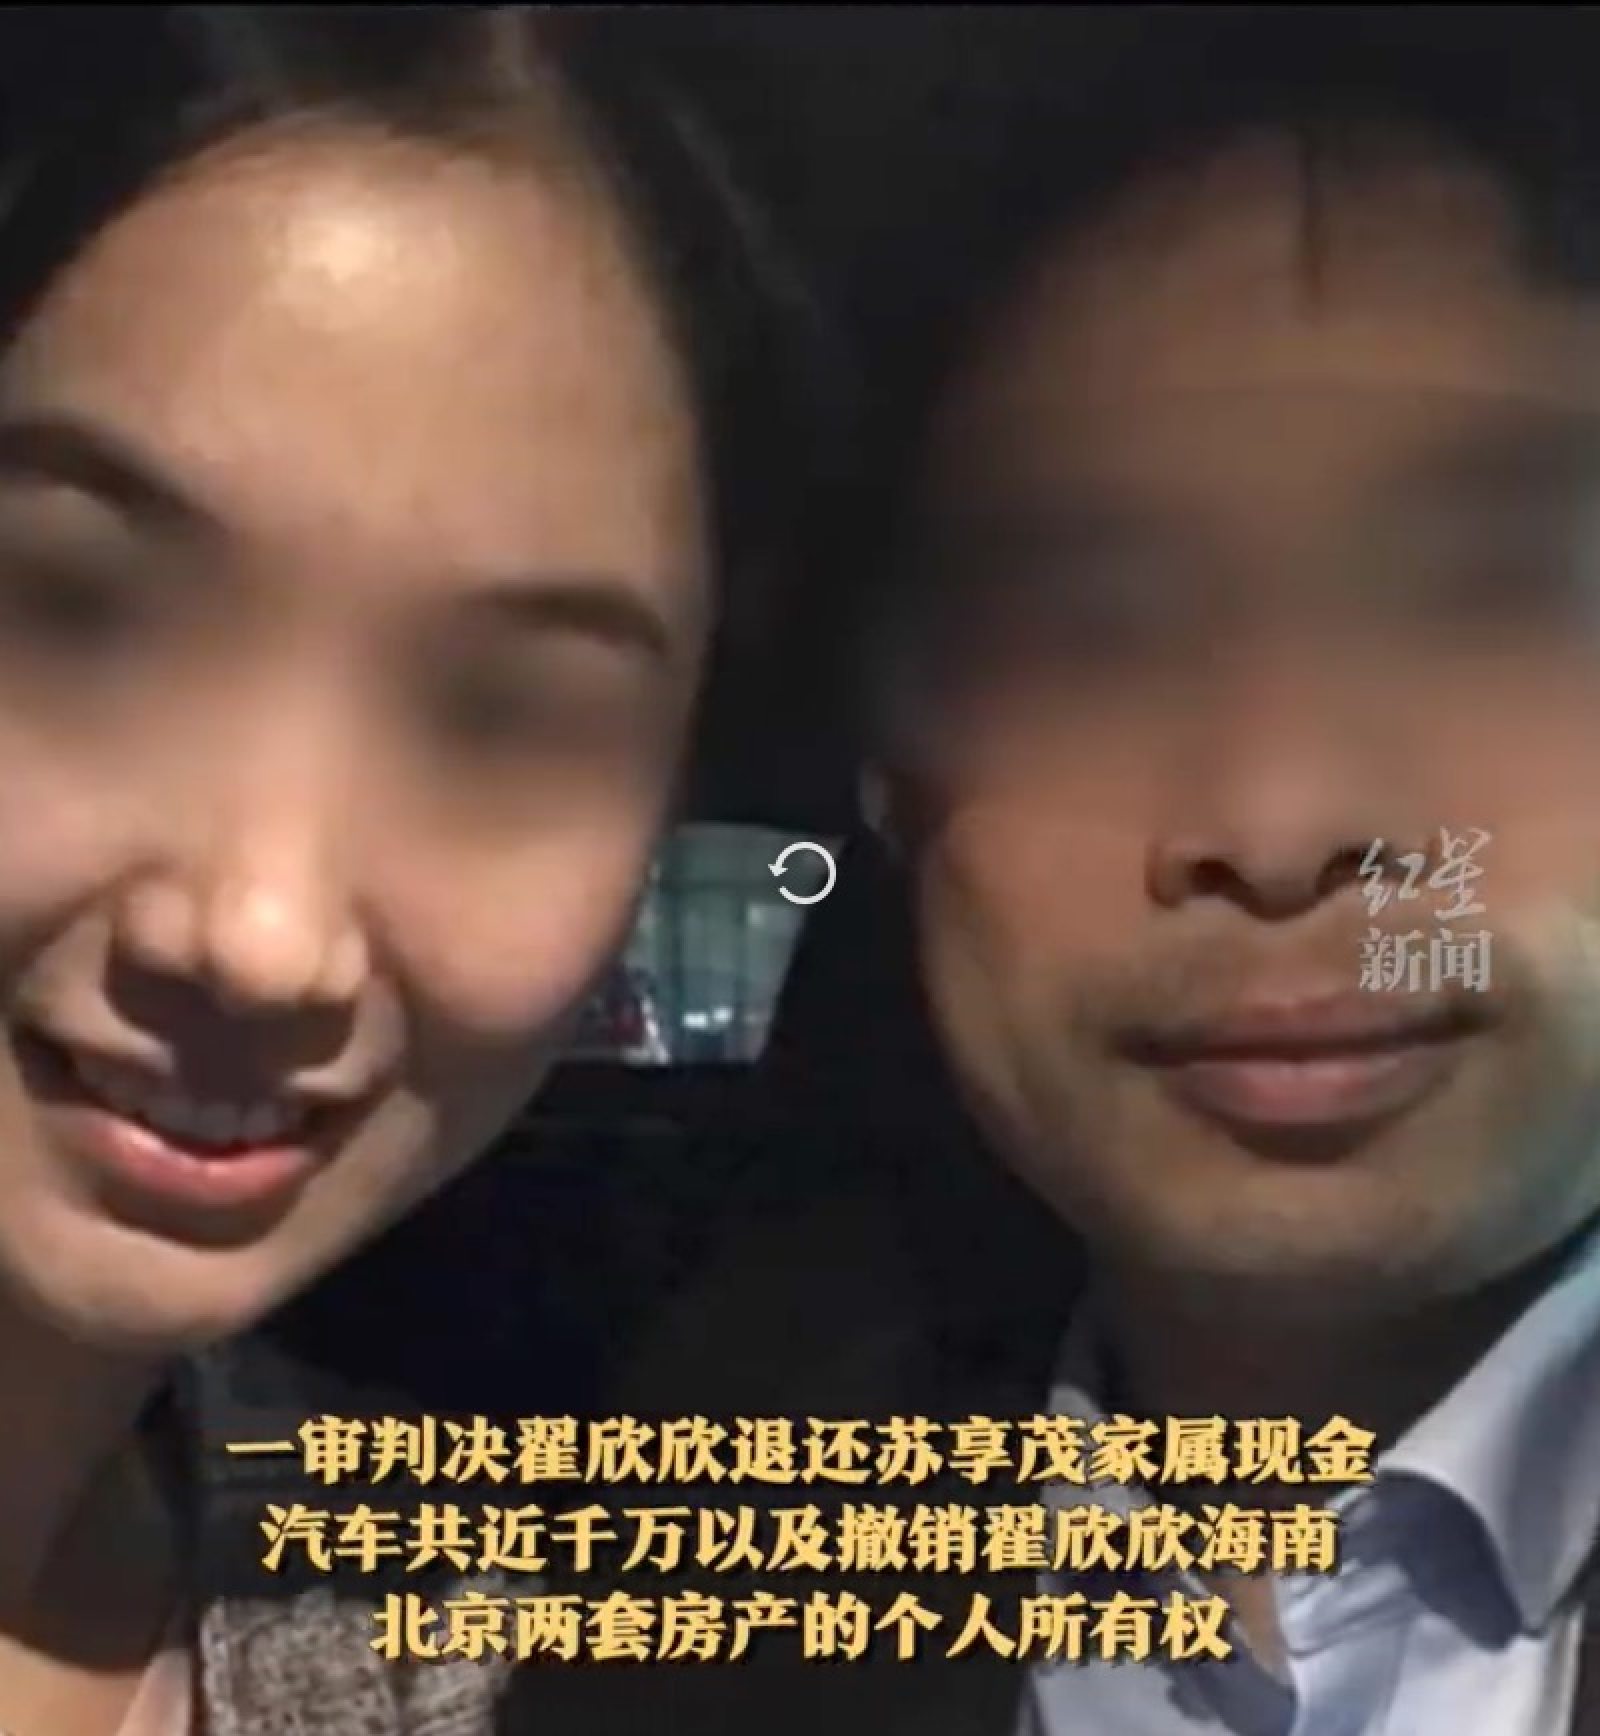 Người phụ nữ Trung Quốc gây phẫn nộ vì hành động độc ác với chồng cũ, ép anh phải tự kết thúc cuộc đời - Ảnh 2.